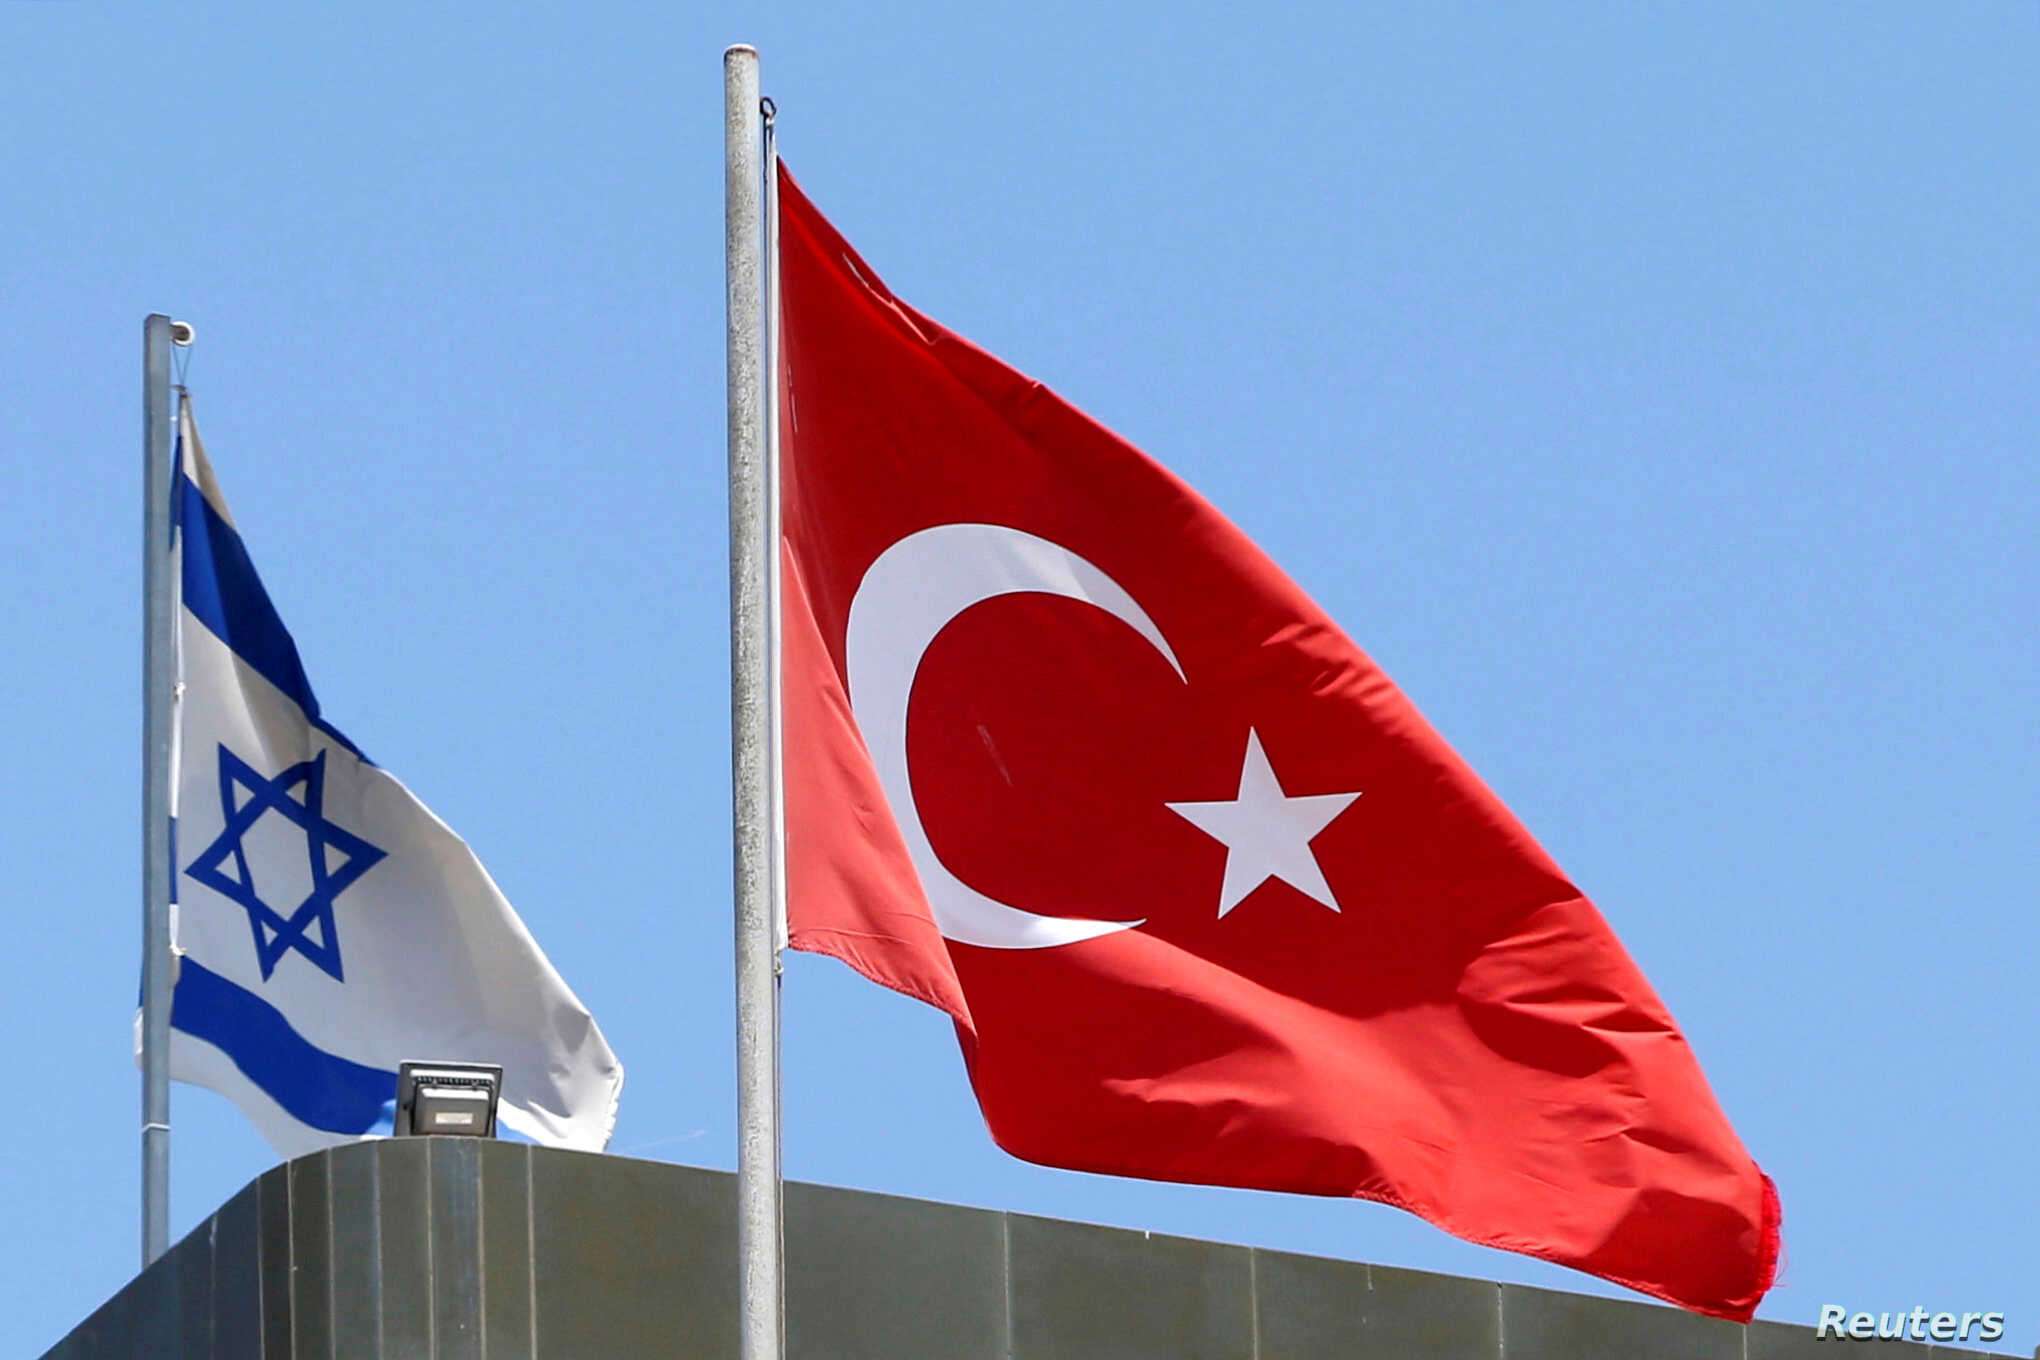  Νέα μέτρα κατά του Ισραήλ προανήγγειλε ο Τούρκος ΥΠΕΞ